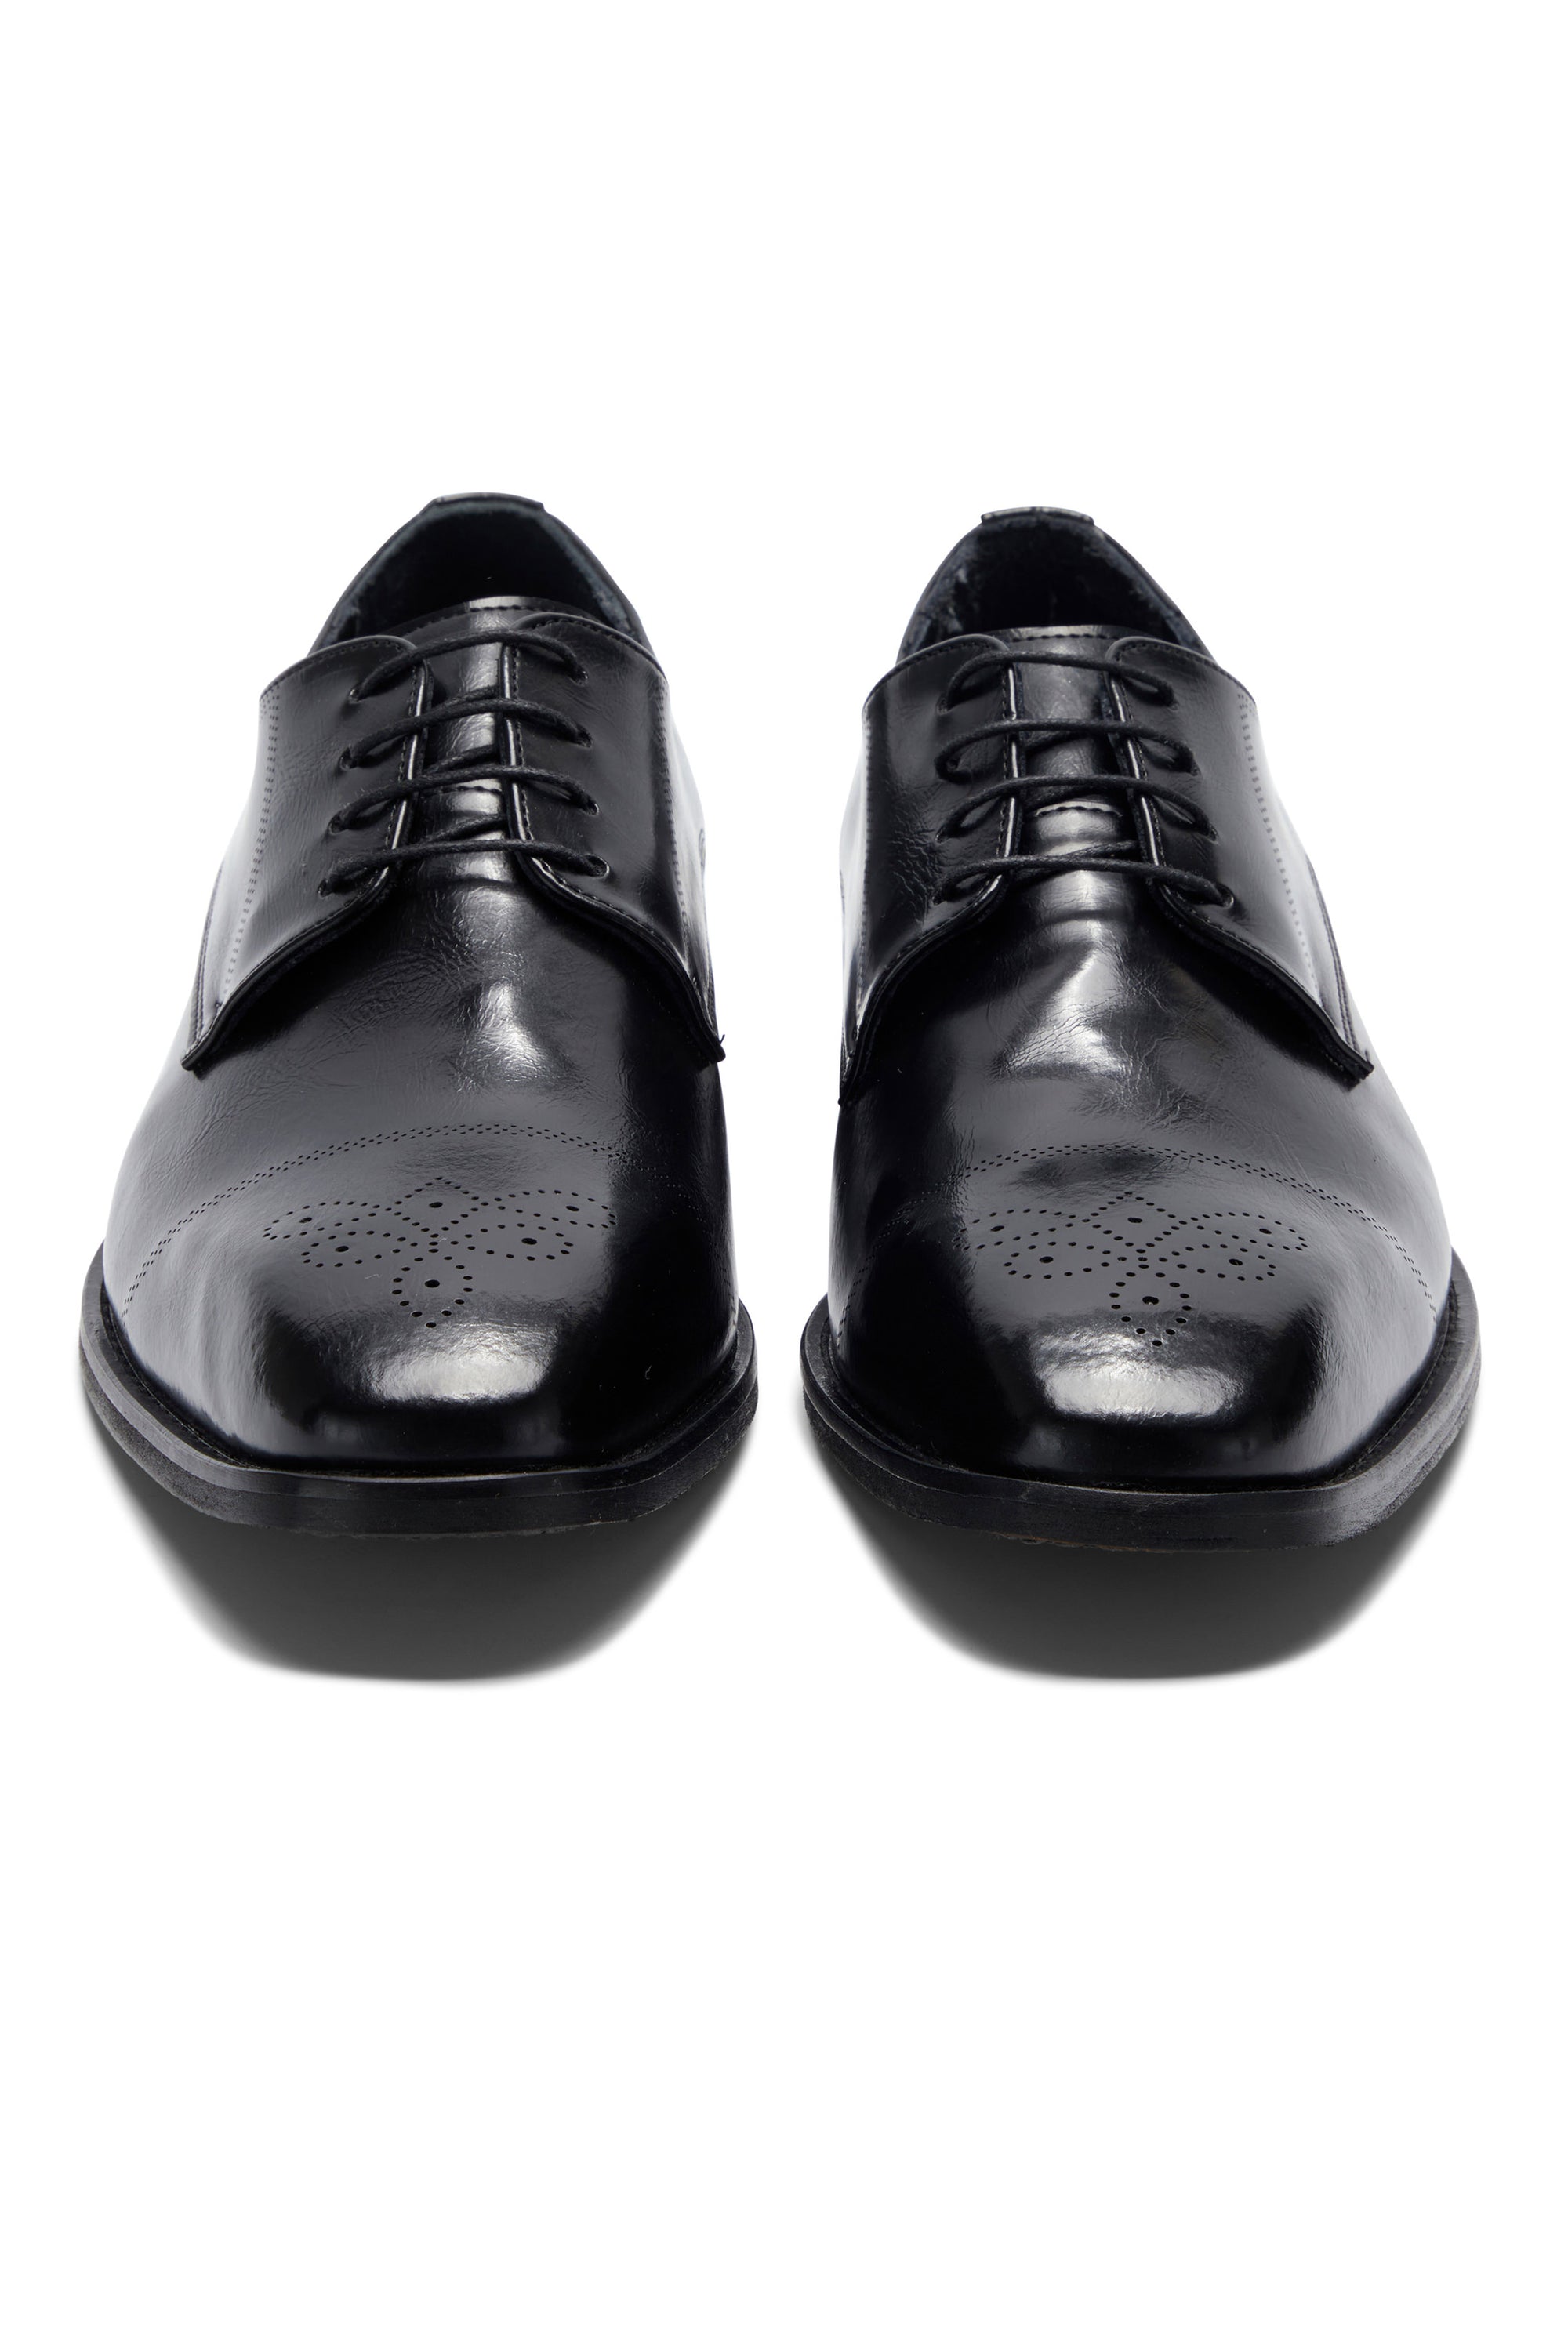 Louis black Shoe By Benetti Menswear 